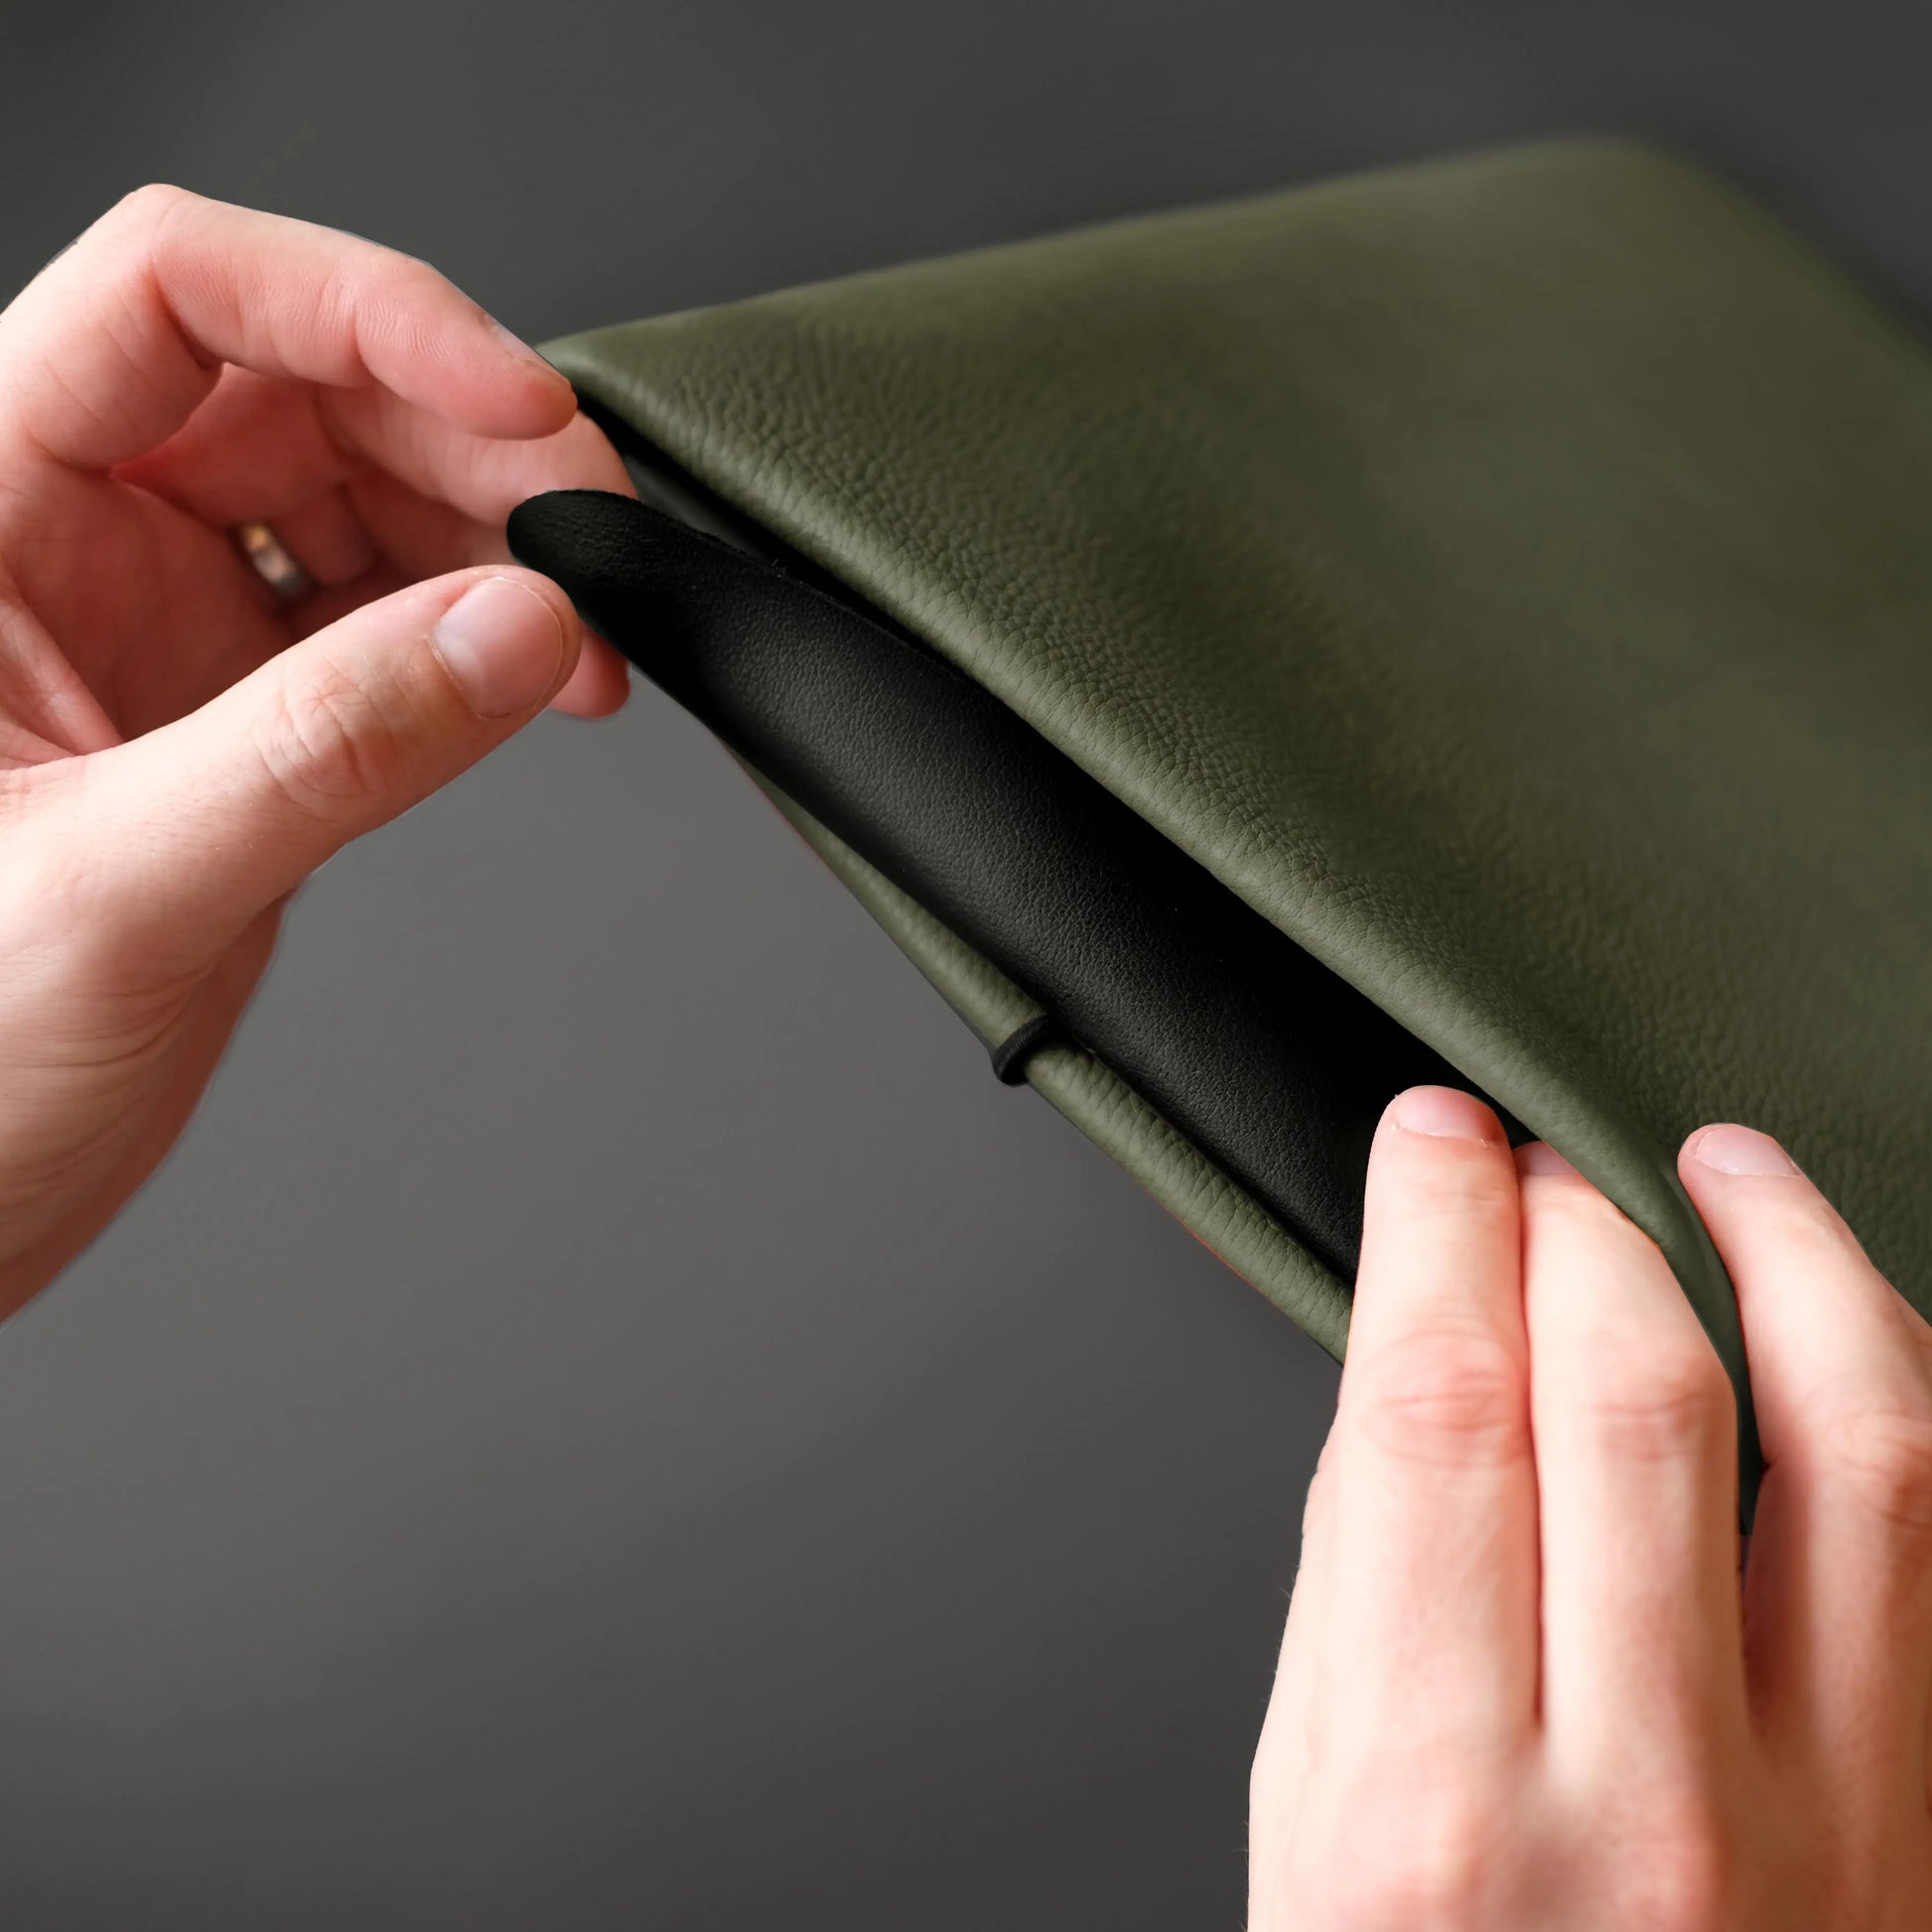 olivgrüne iPadhülle von Vandebag aus Leder wird von zwei Händen mit der Verschlusskordel geschlossen